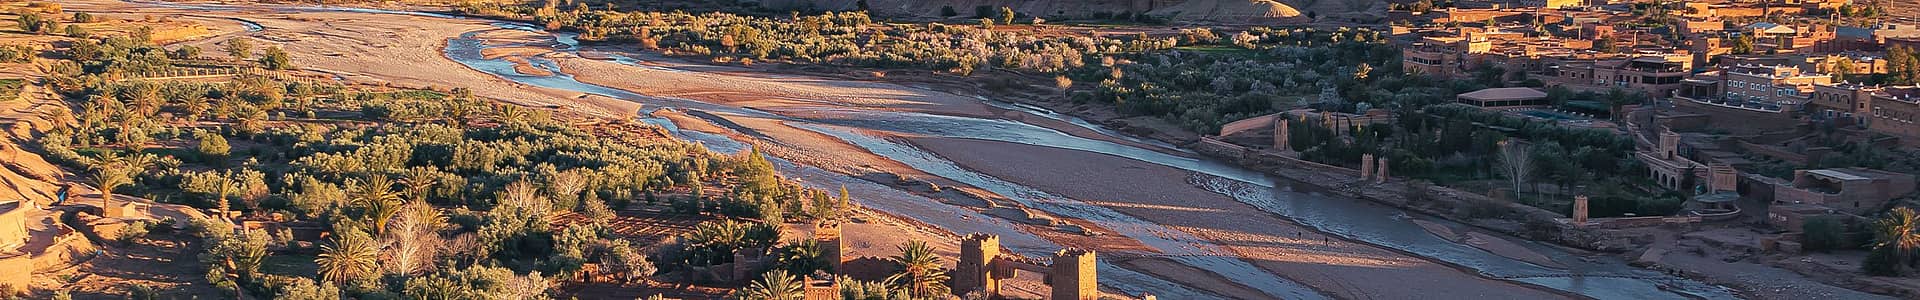 Sud del Marocco